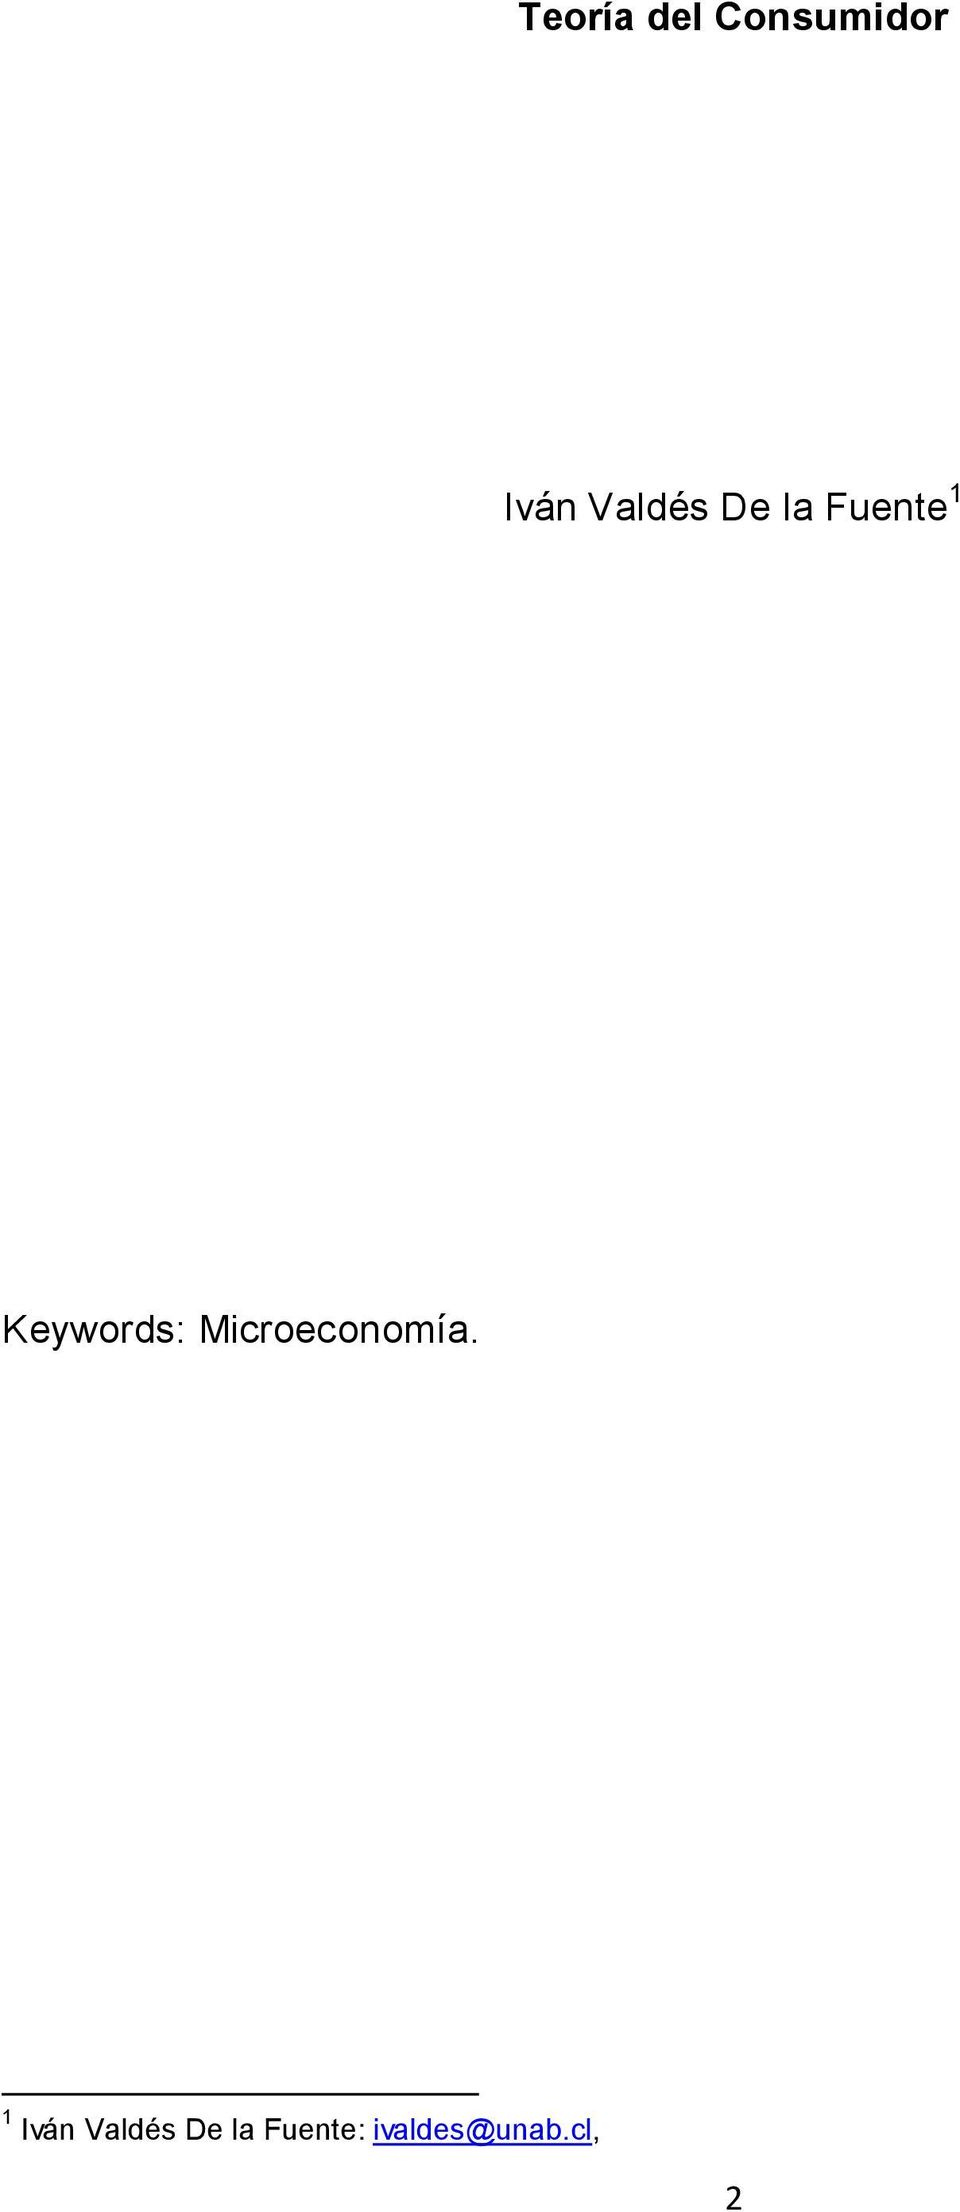 Keywords: Microeconomía.